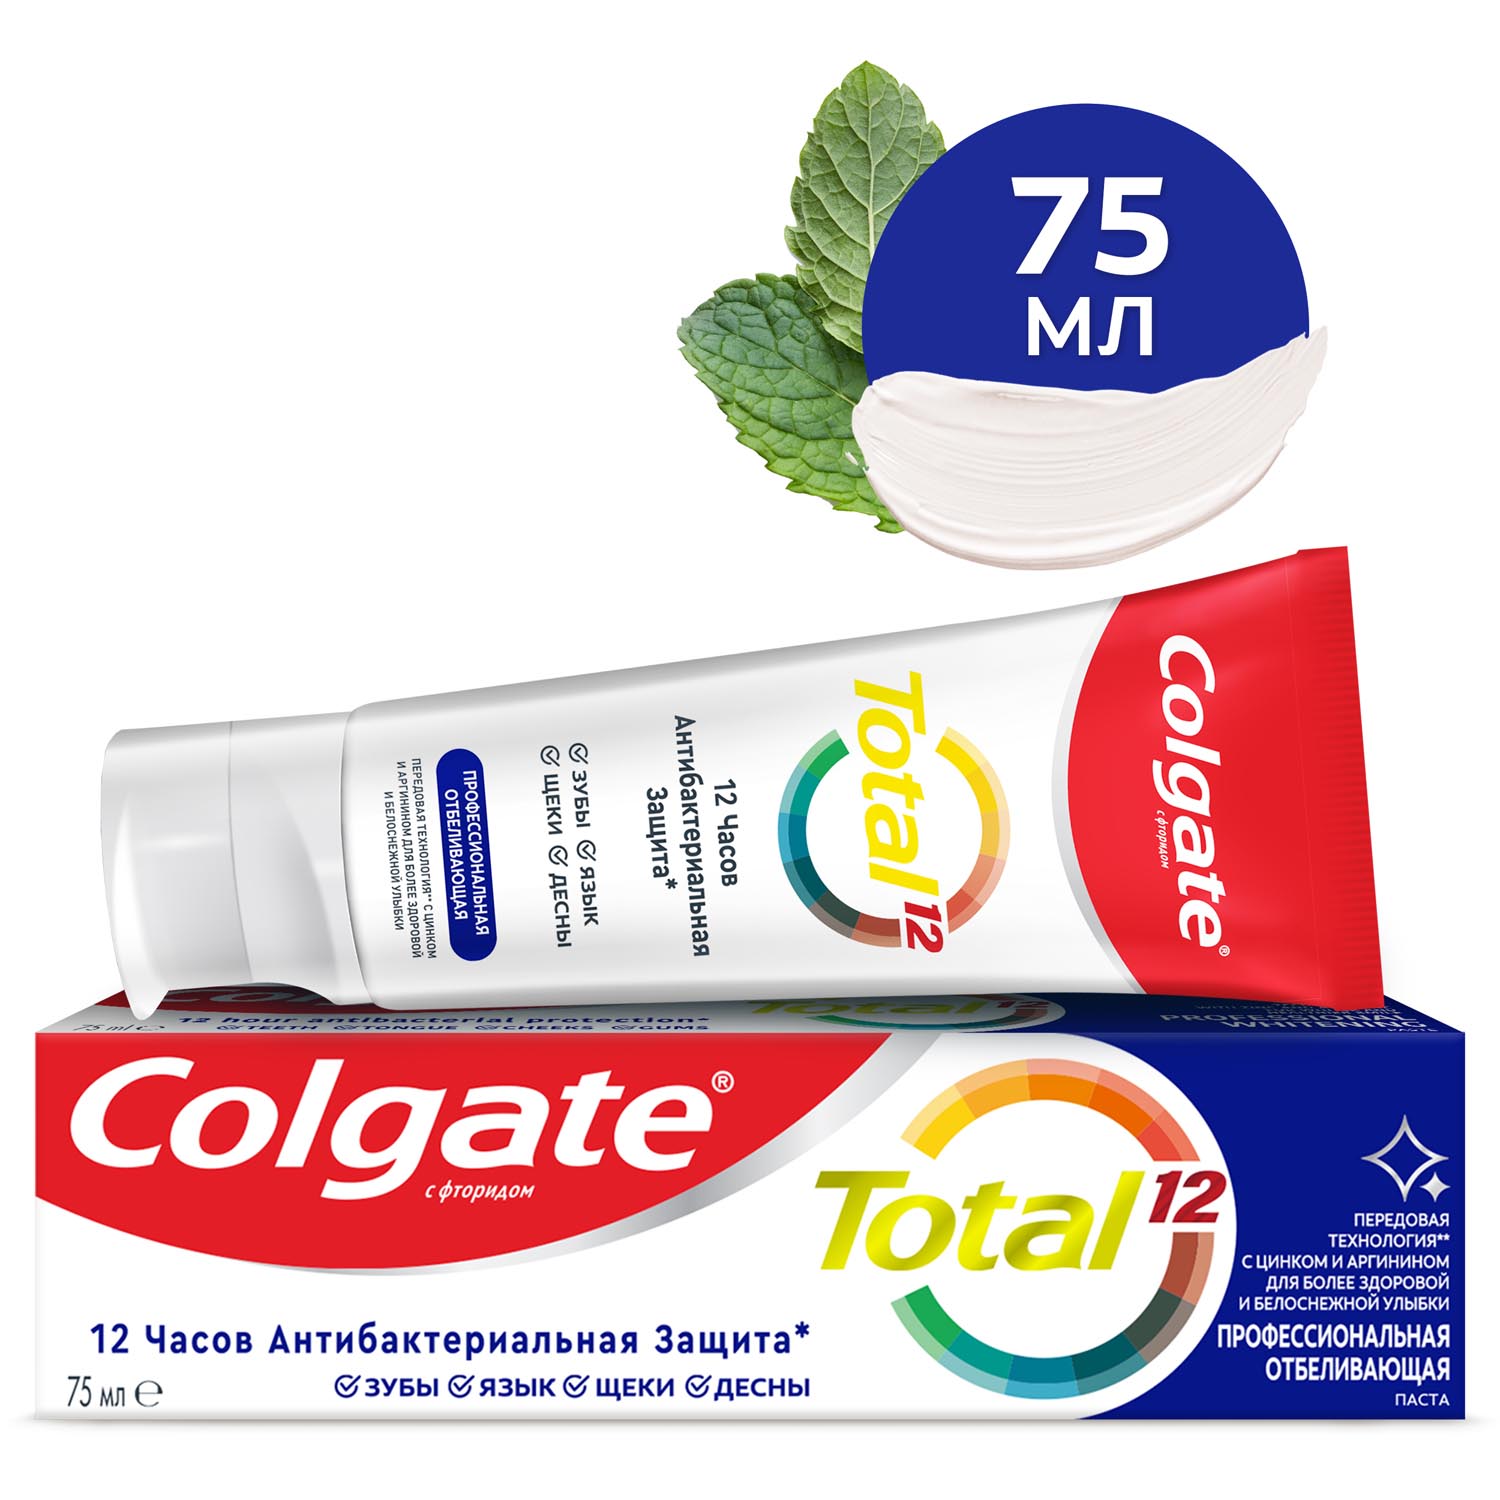 Зубная паста Colgate Total 12 Профессиональная Отбеливающая с цинком и аргинином для борьбы с потемнениями эмали и с антибактериальной защитой всей полости рта в течение 12 часов, 75 мл